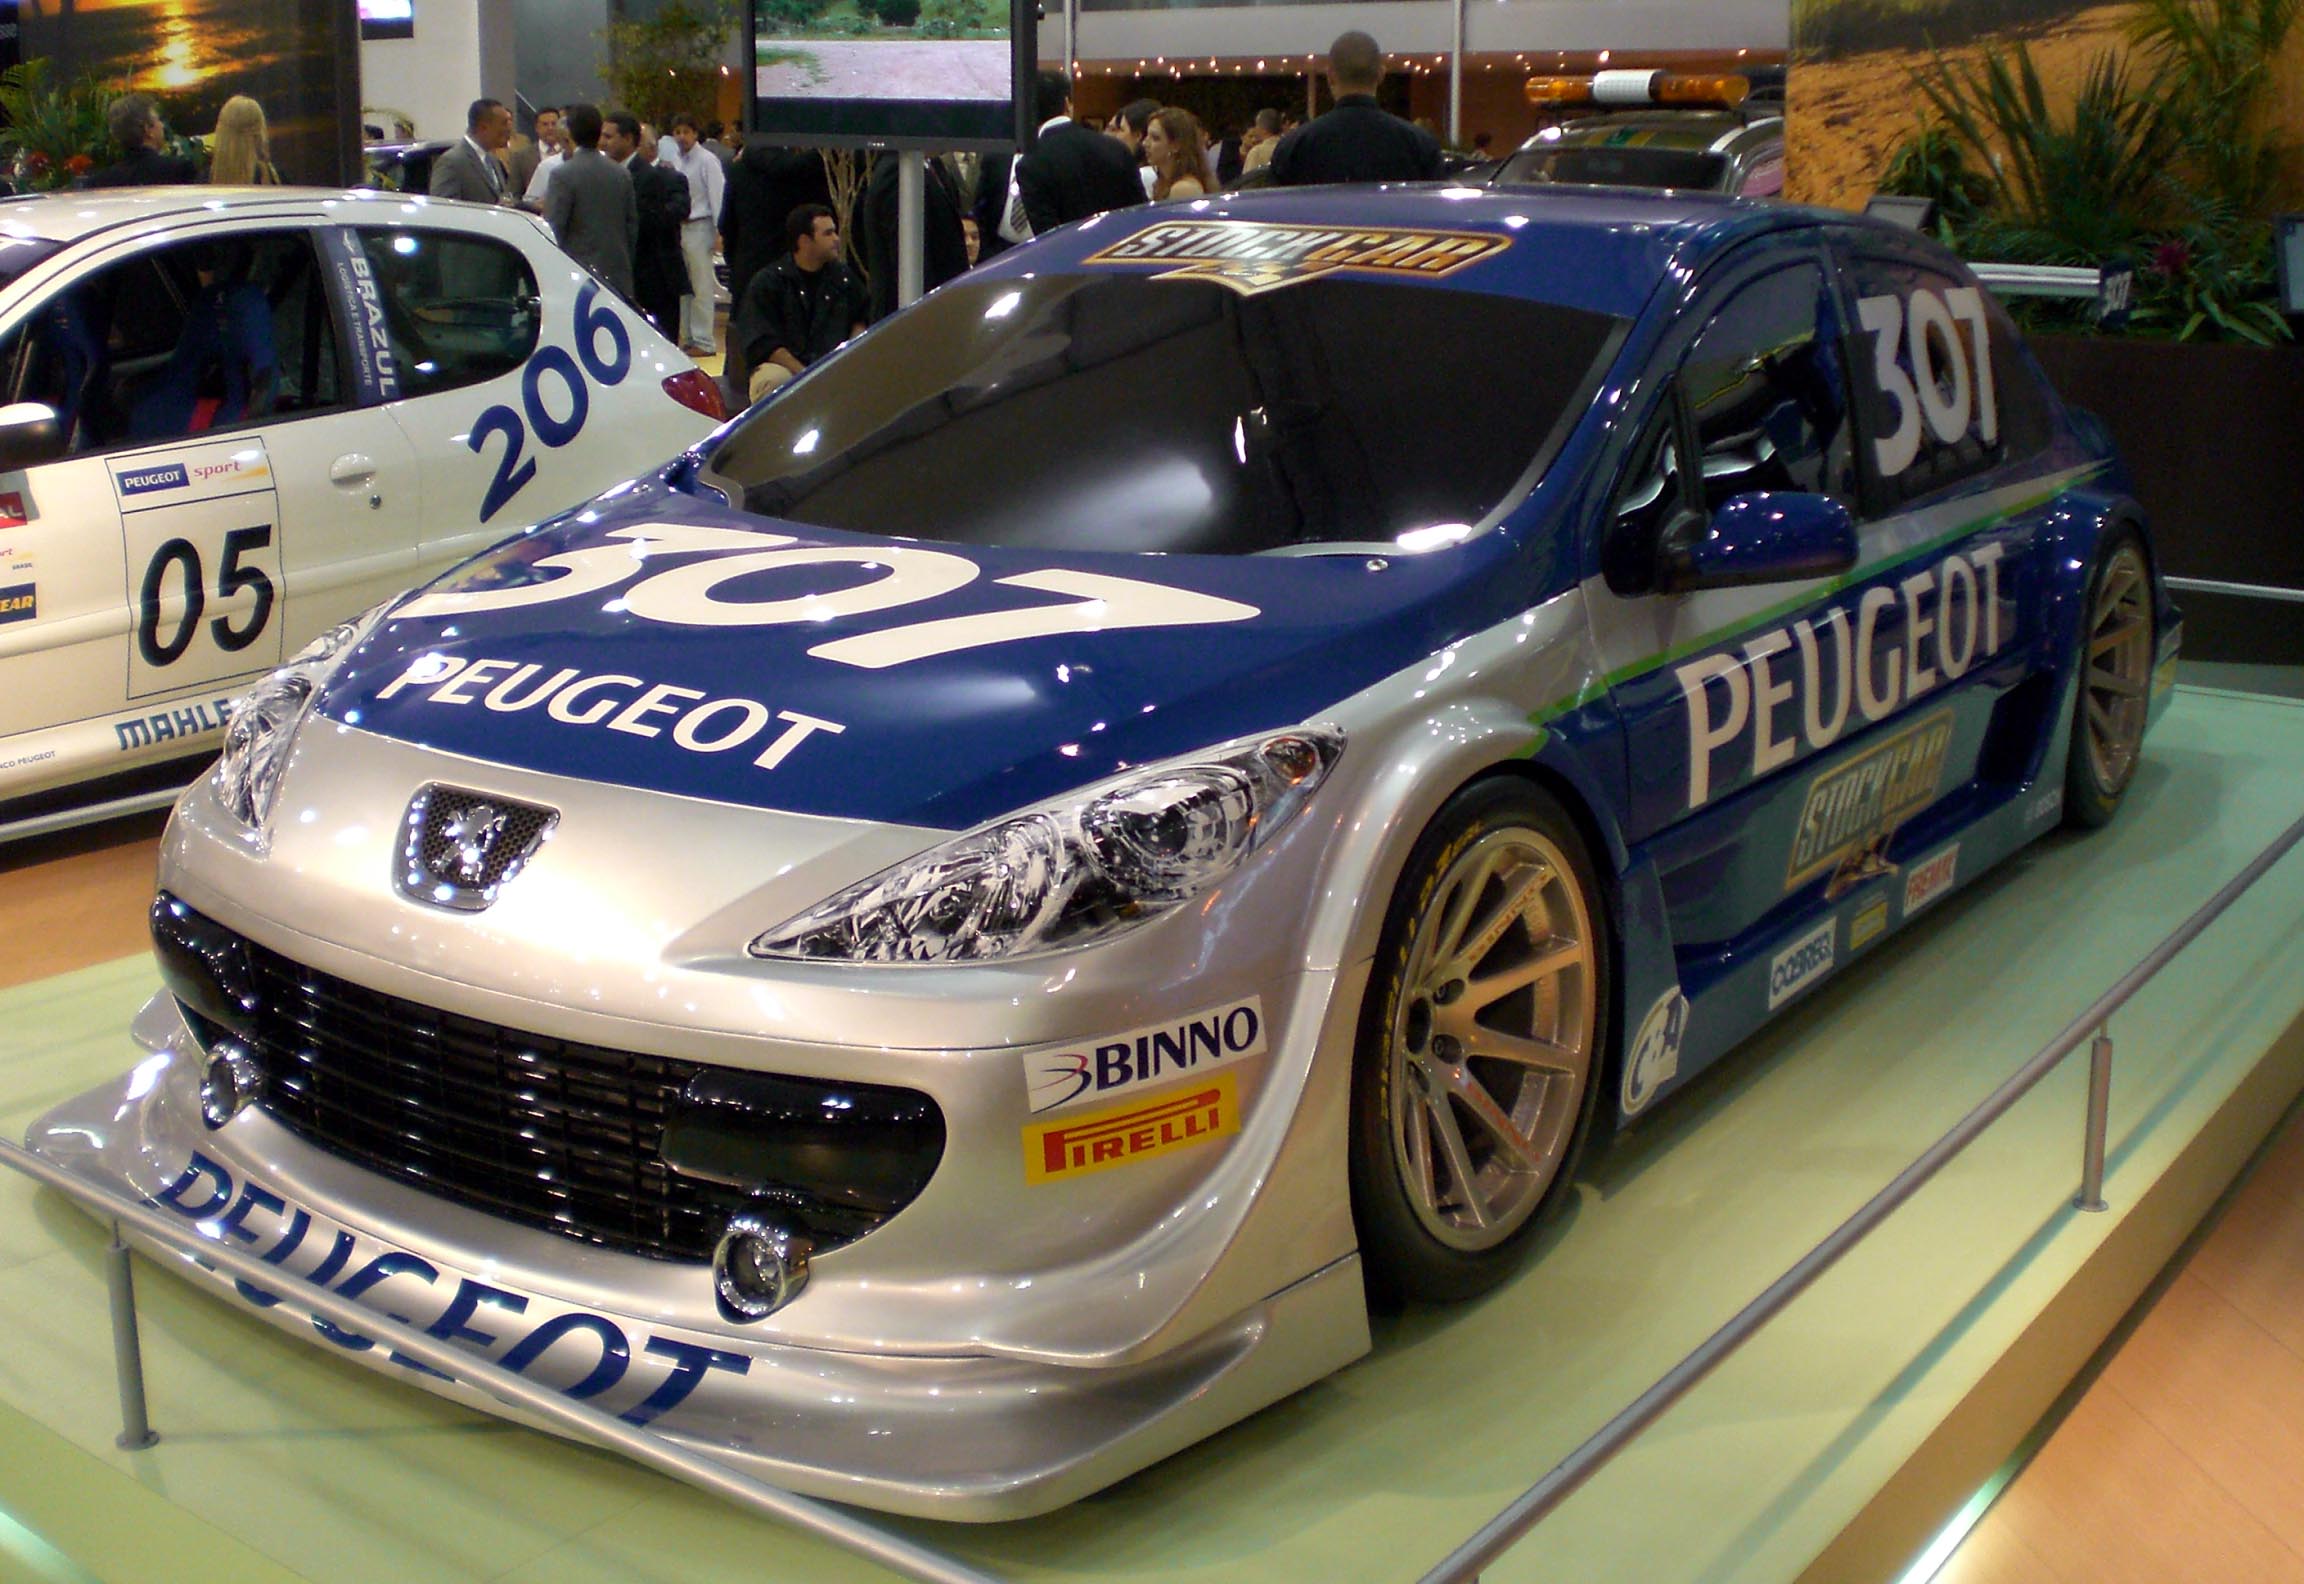 Stock_Car_V8_Brasil_2007_Peugeot_307_con